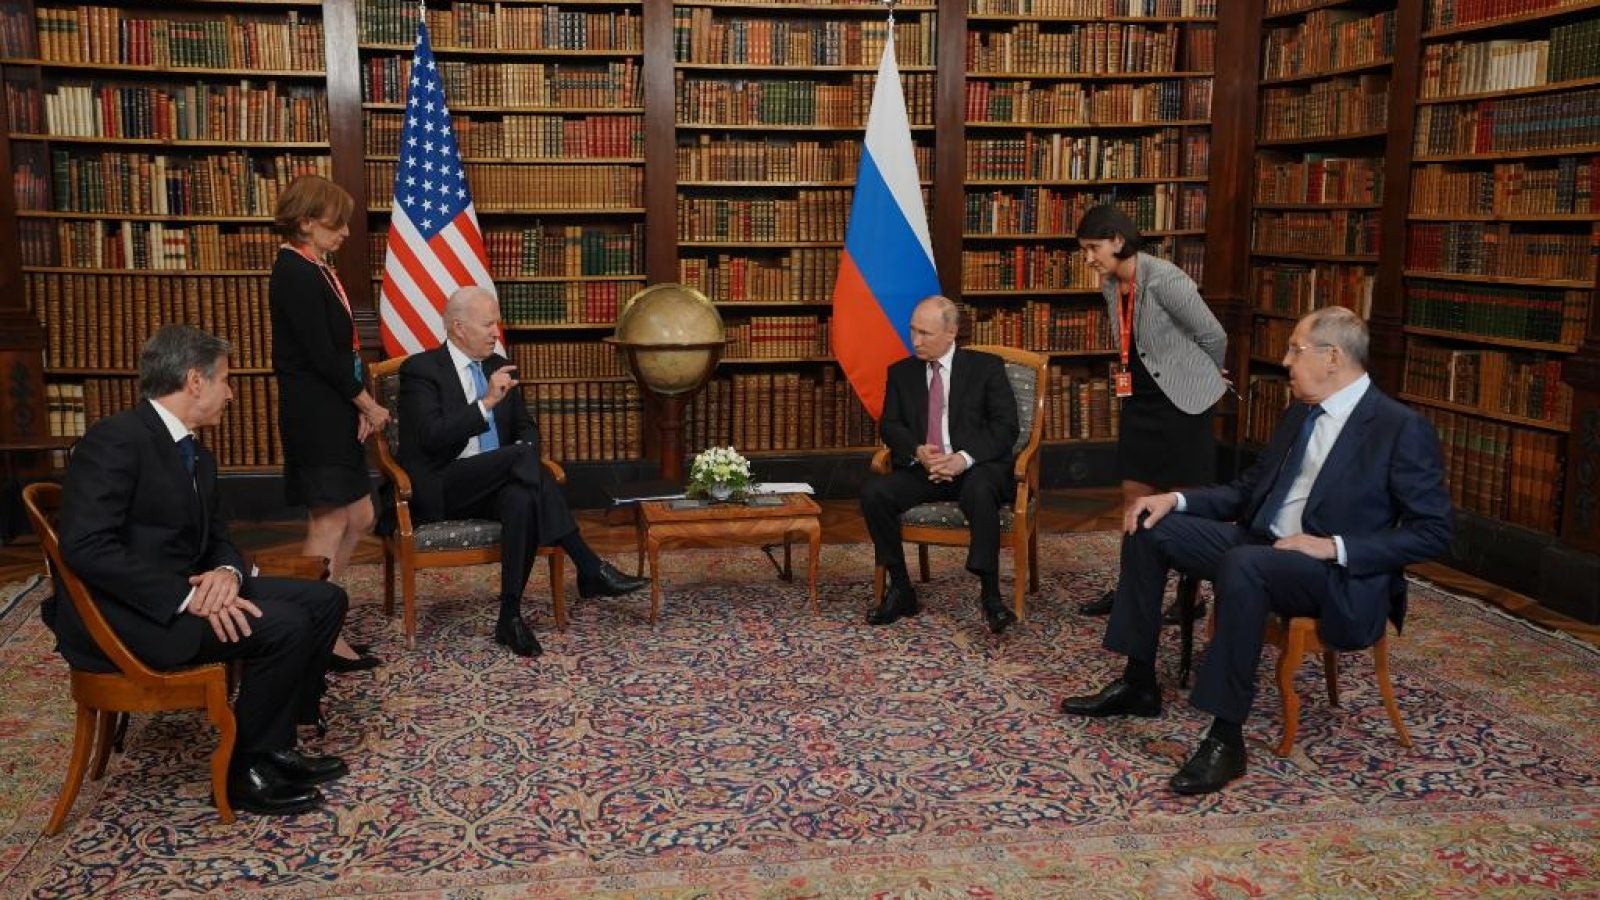 Joe Biden meets with Vladimir Putin